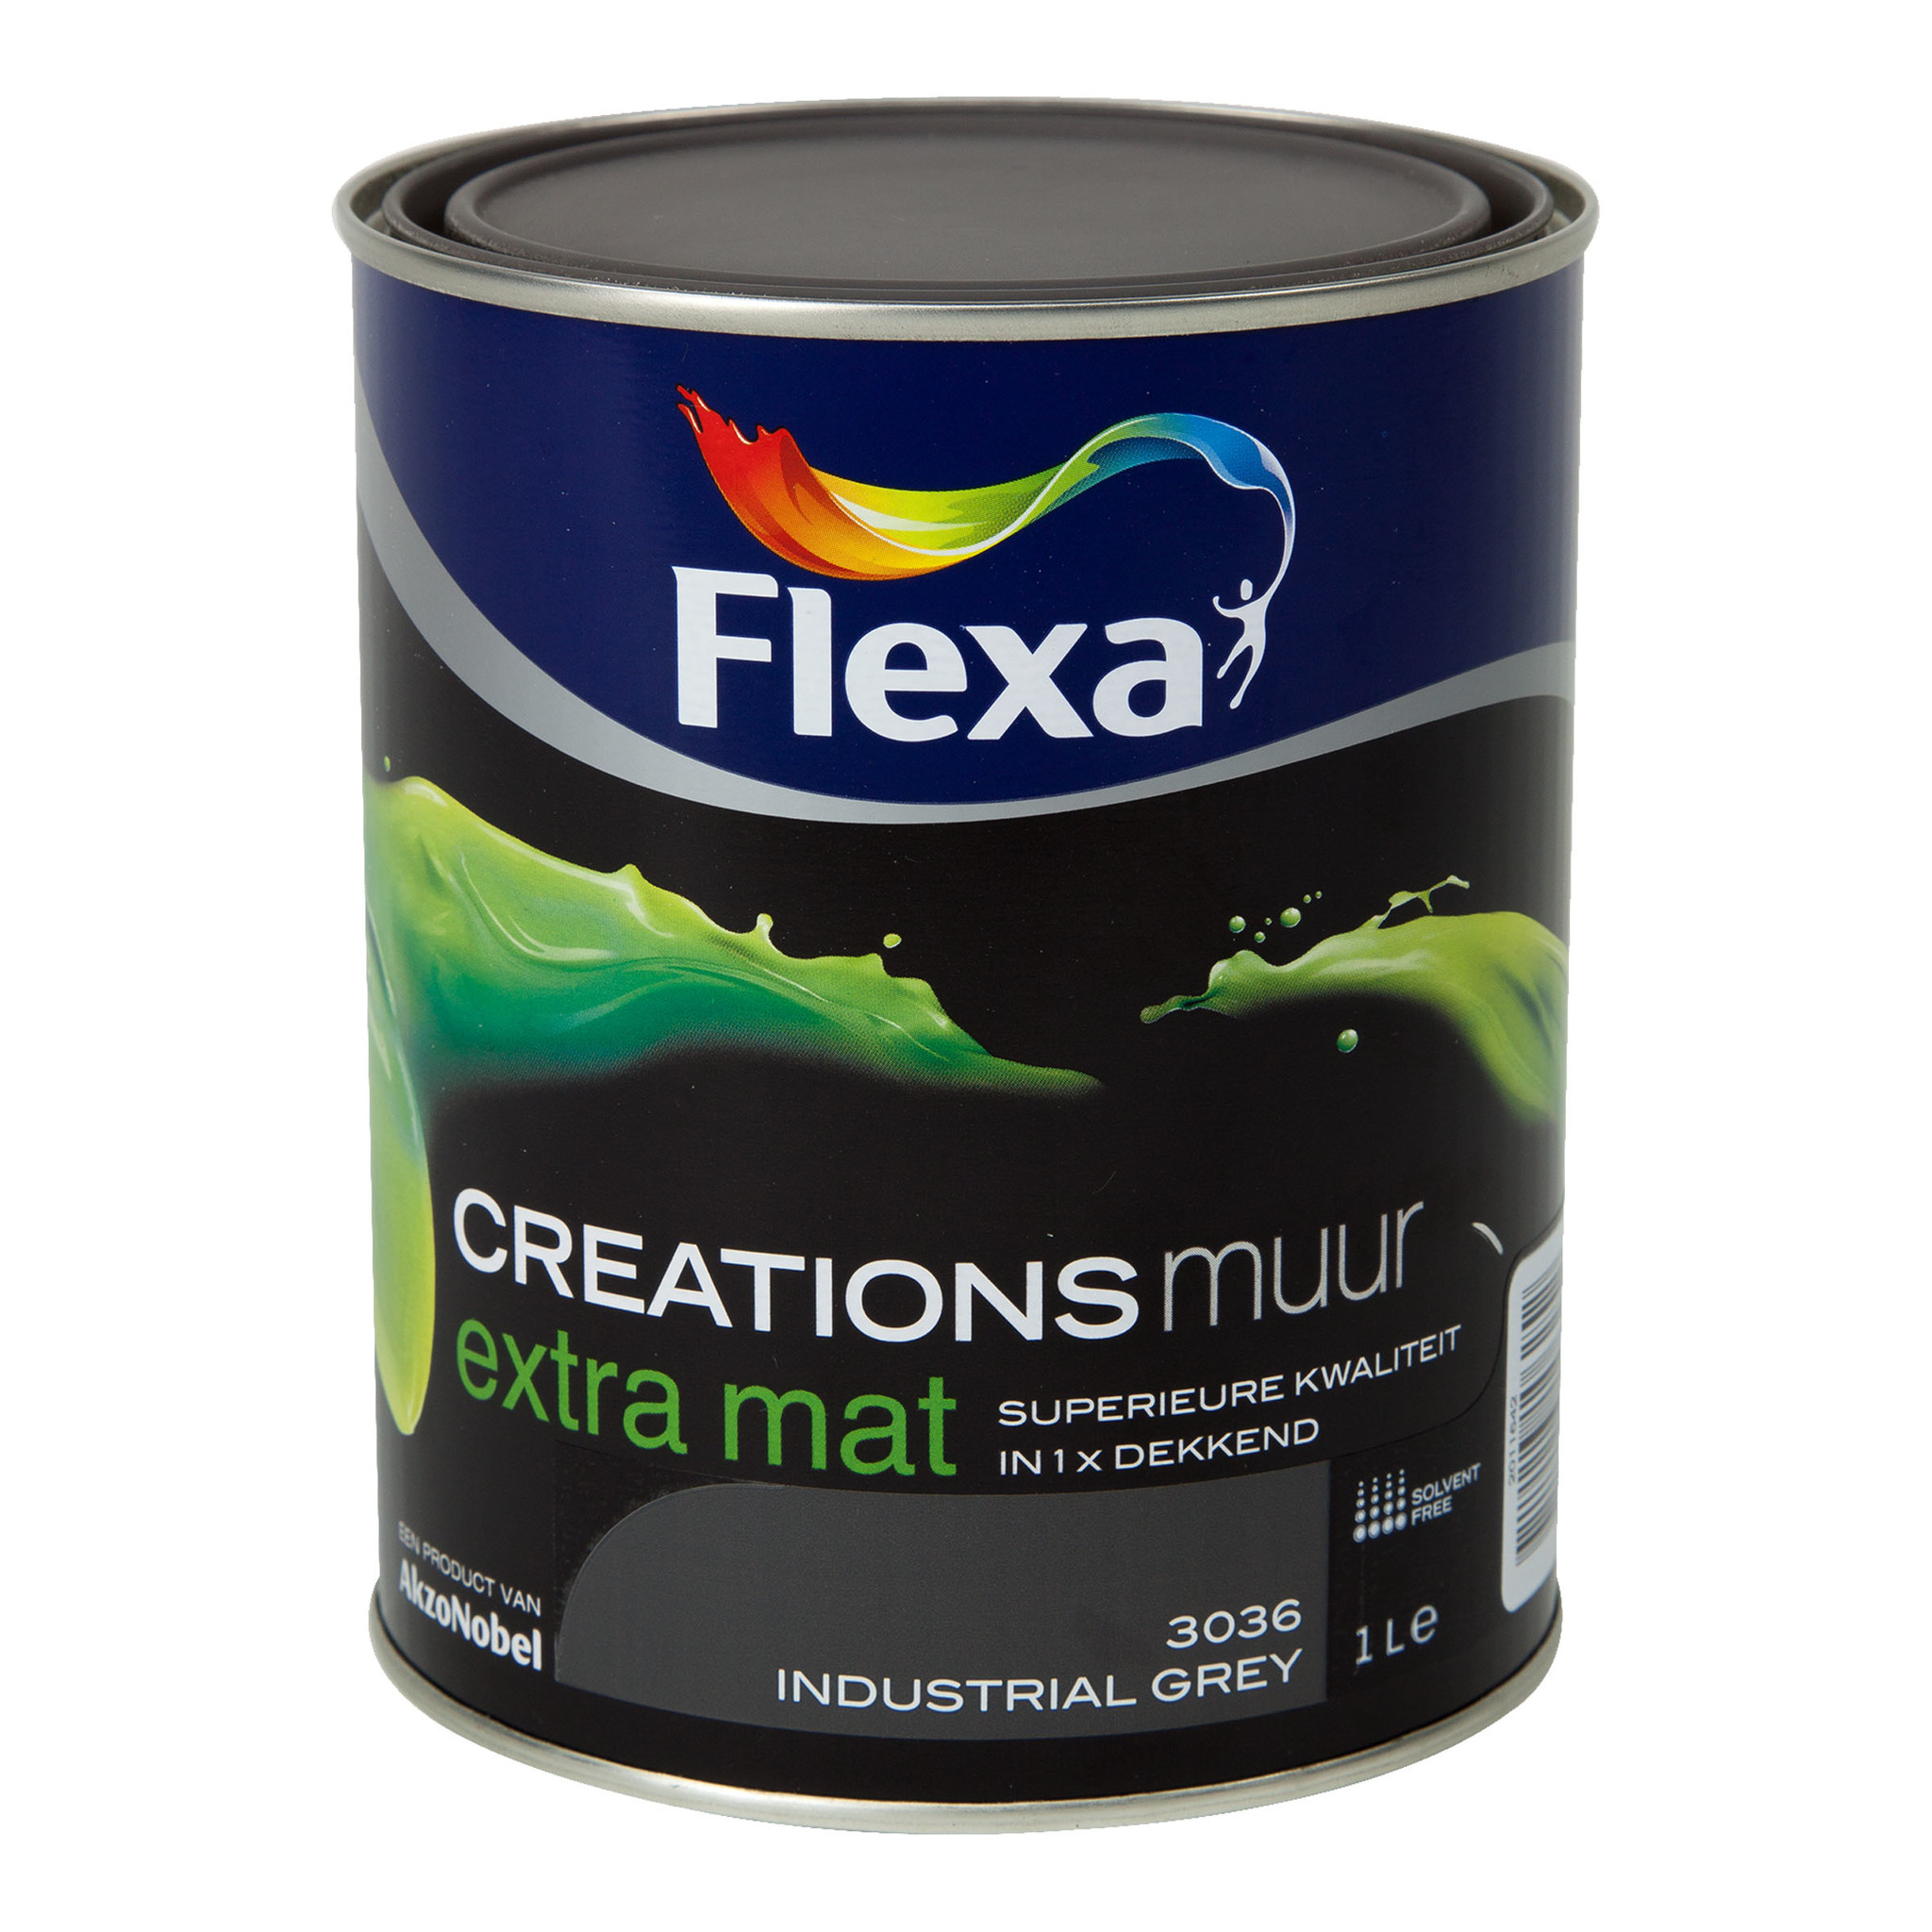 te rechtvaardigen bed toewijding Flexa Creations - Muurverf Extra Mat - Industrial Grey - 2,5 liter kopen? |  Korting tot 40% - De Verfzaak